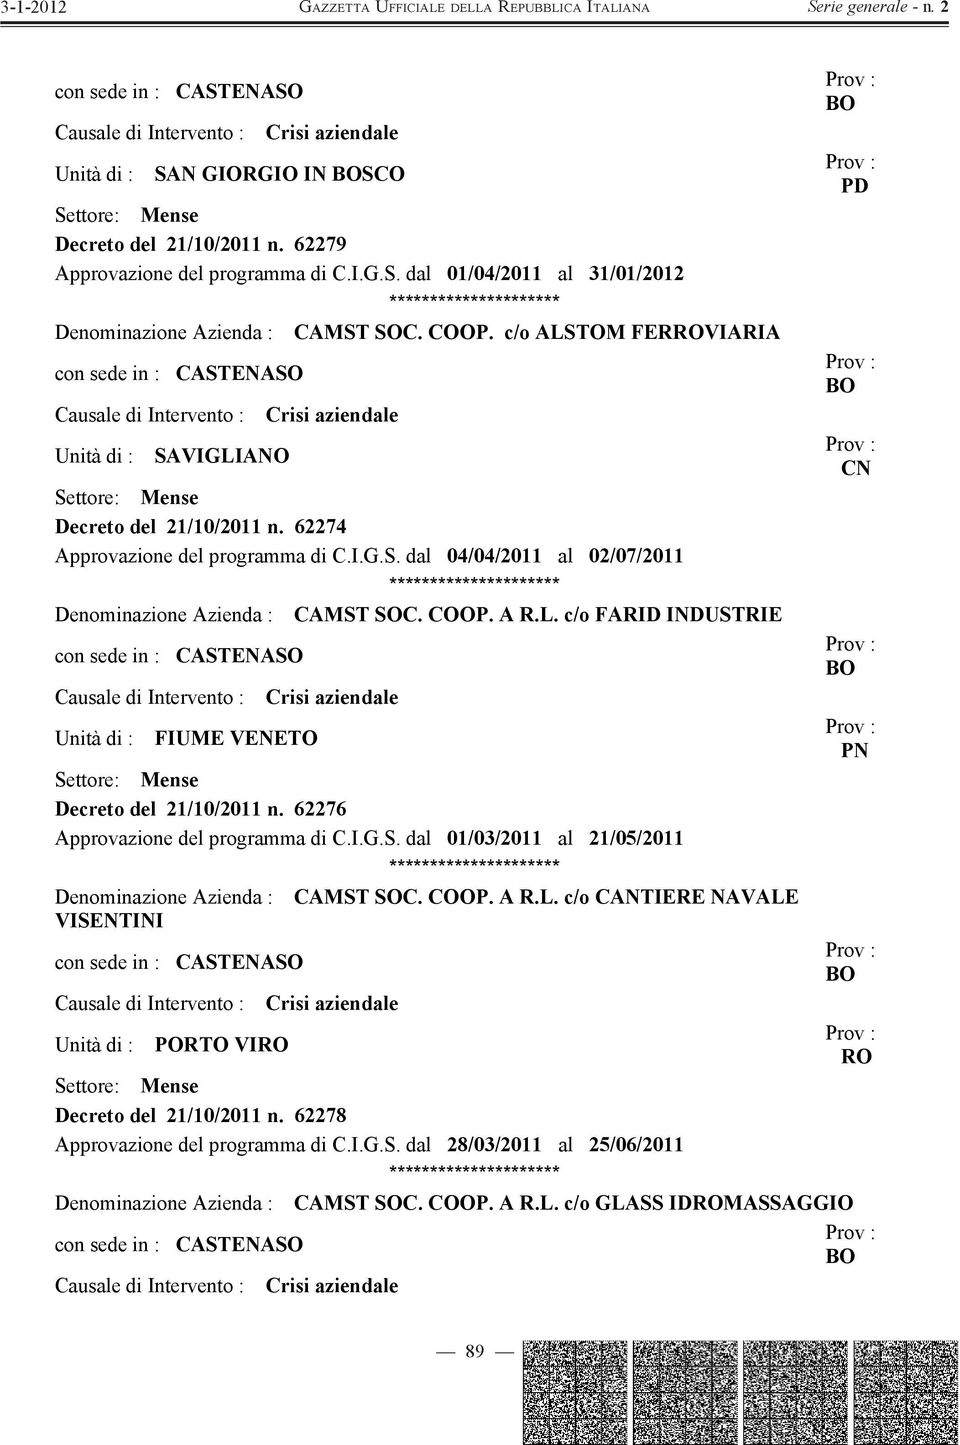 COOP. A R.L. c/o FARID INDUSTRIE con sede in : CASTENASO FIUME VENE PN Mense Decreto del 21/10/2011 n. 62276 Approvazione del programma di C.I.G.S. dal 01/03/2011 al 21/05/2011 Denominazione Azienda : CAMST SOC.